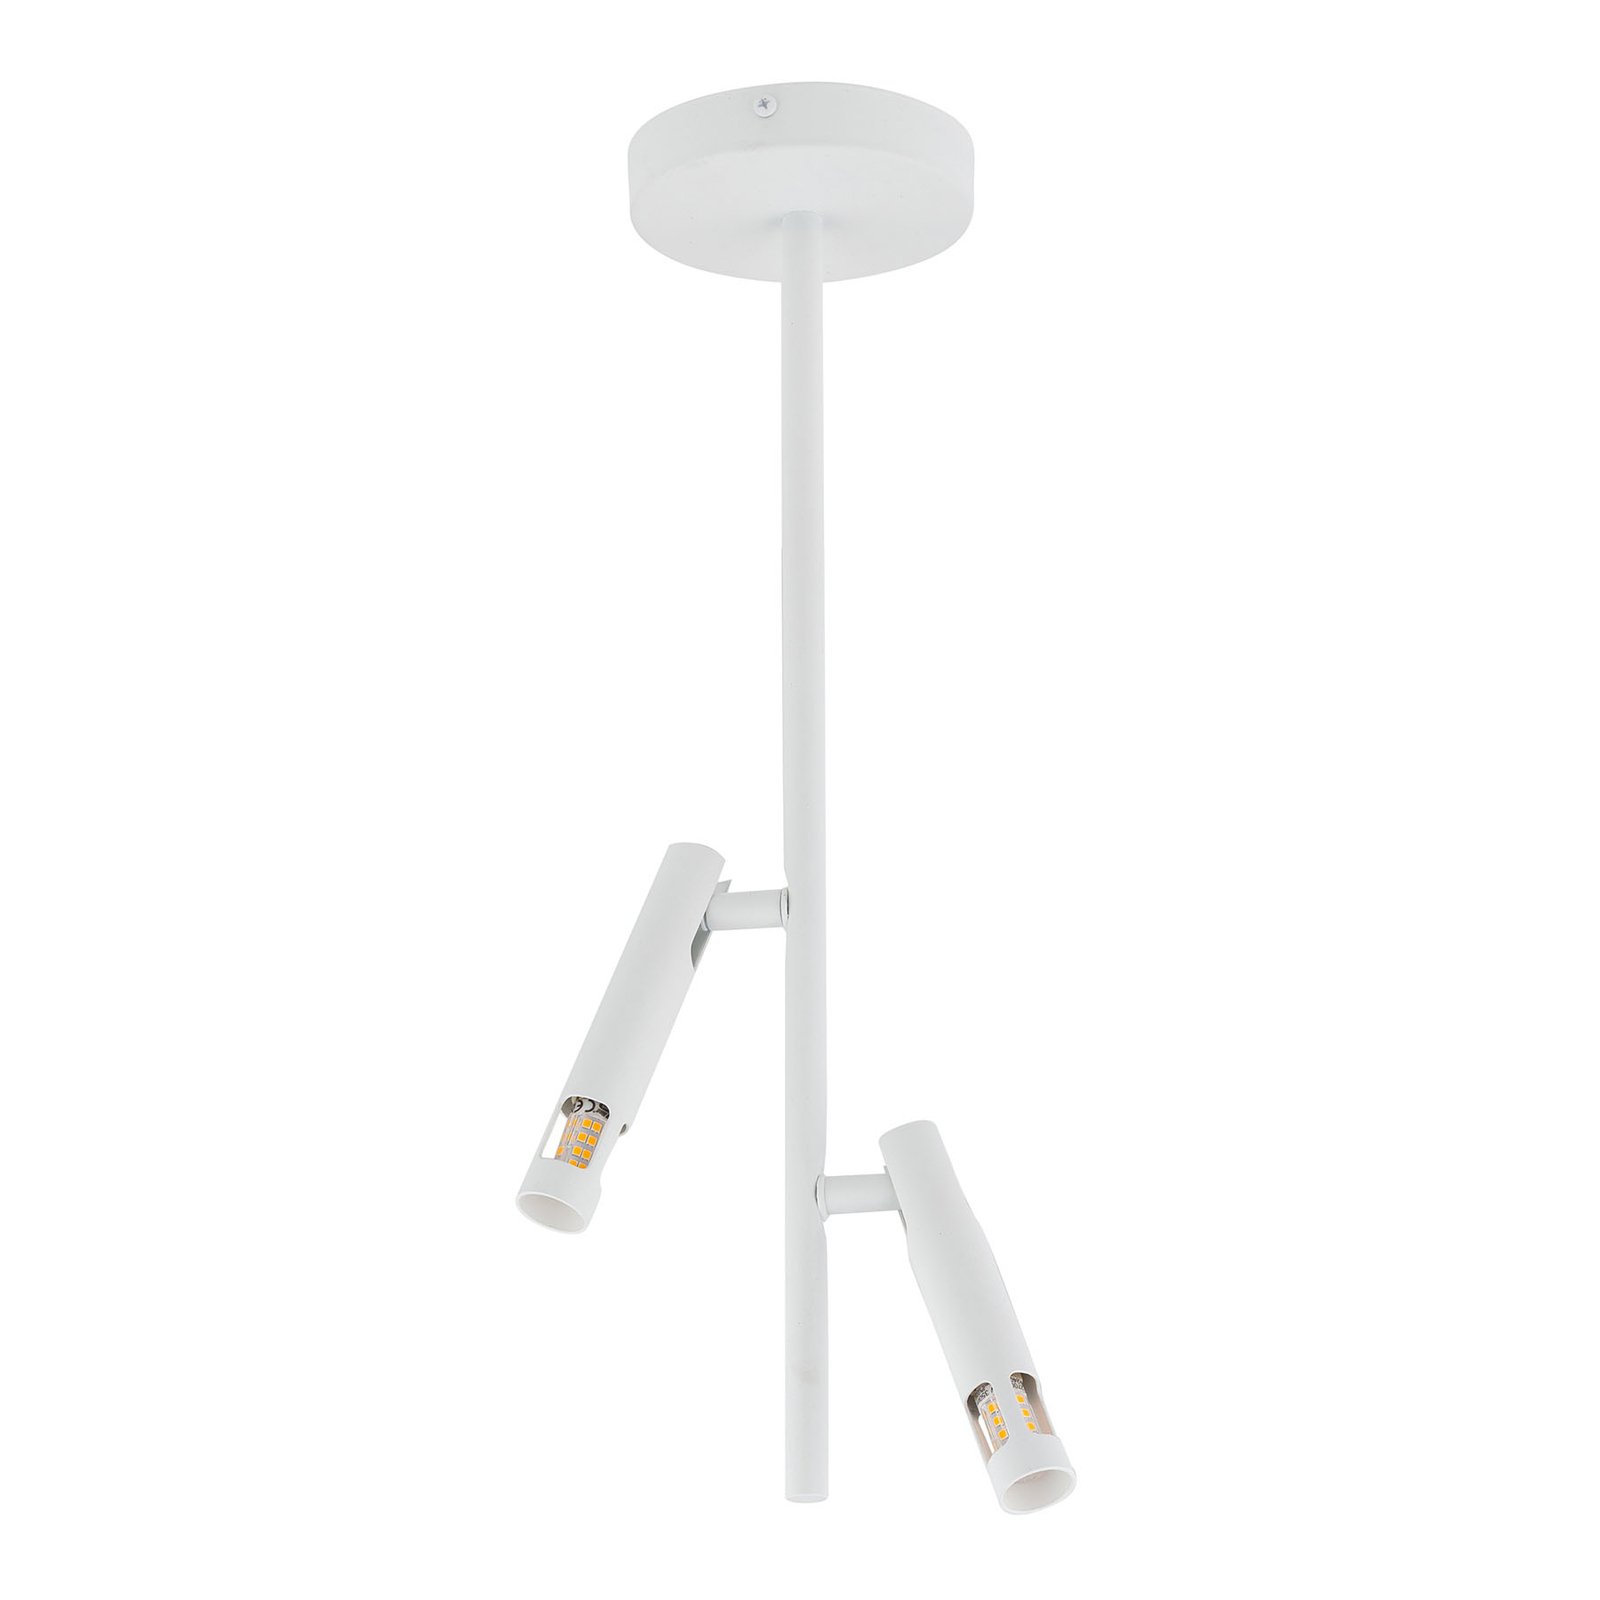 Leda Mini 2 ceiling spotlight, two-bulb, white